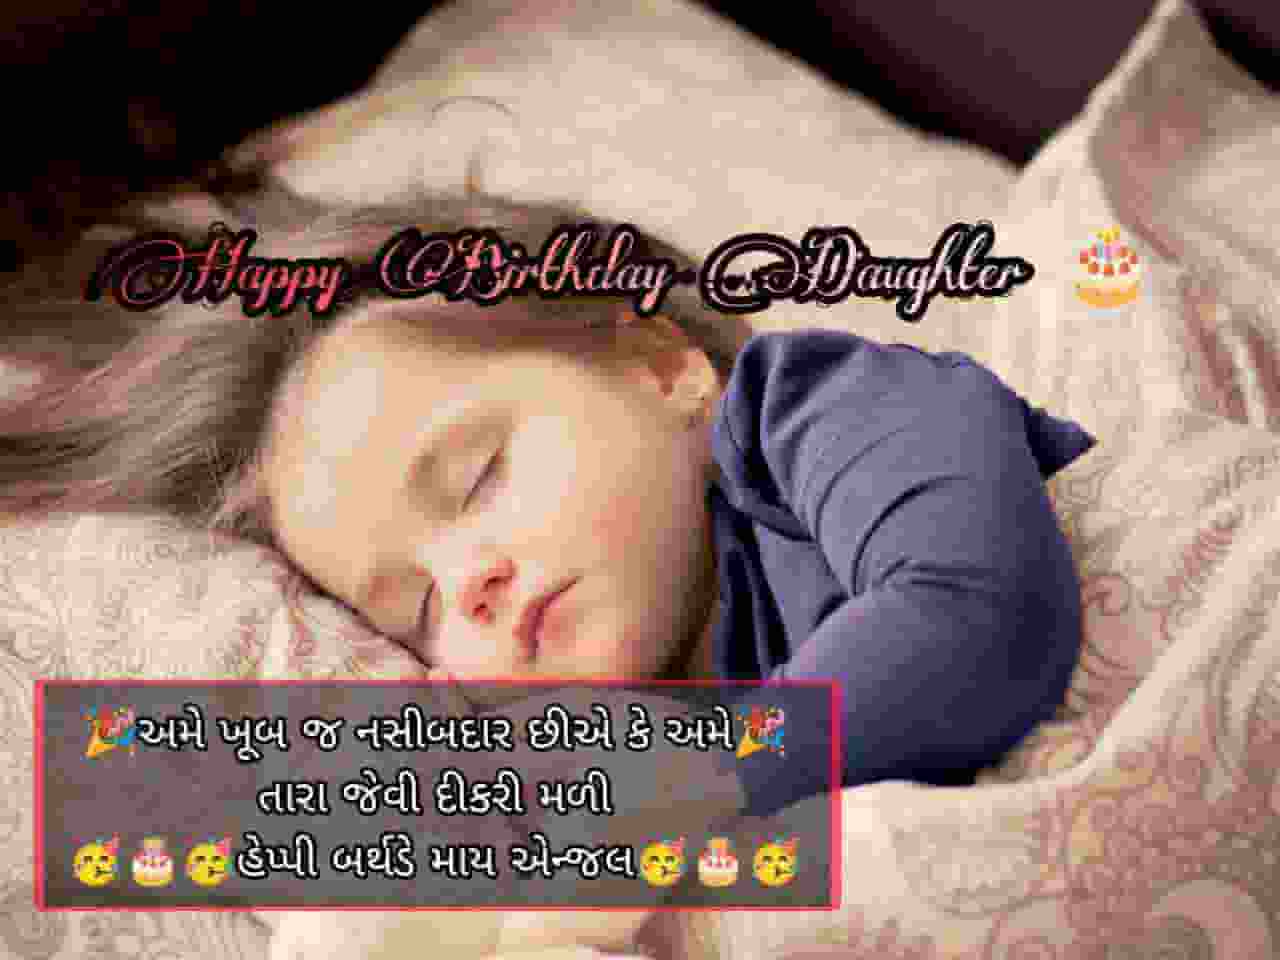 Birthday Wishes For Daughter In Gujarati,Happy Birthday Wishes For Daughter In Gujarati,Birthday Wishes For Daughter In Gujarati Language,જન્મદિવસની શુભકામનાઓ દિકરી | દીકરીનો જન્મદિવસ,પુત્રી જન્મદિવસ અભિનંદન શુભેચ્છાઓ